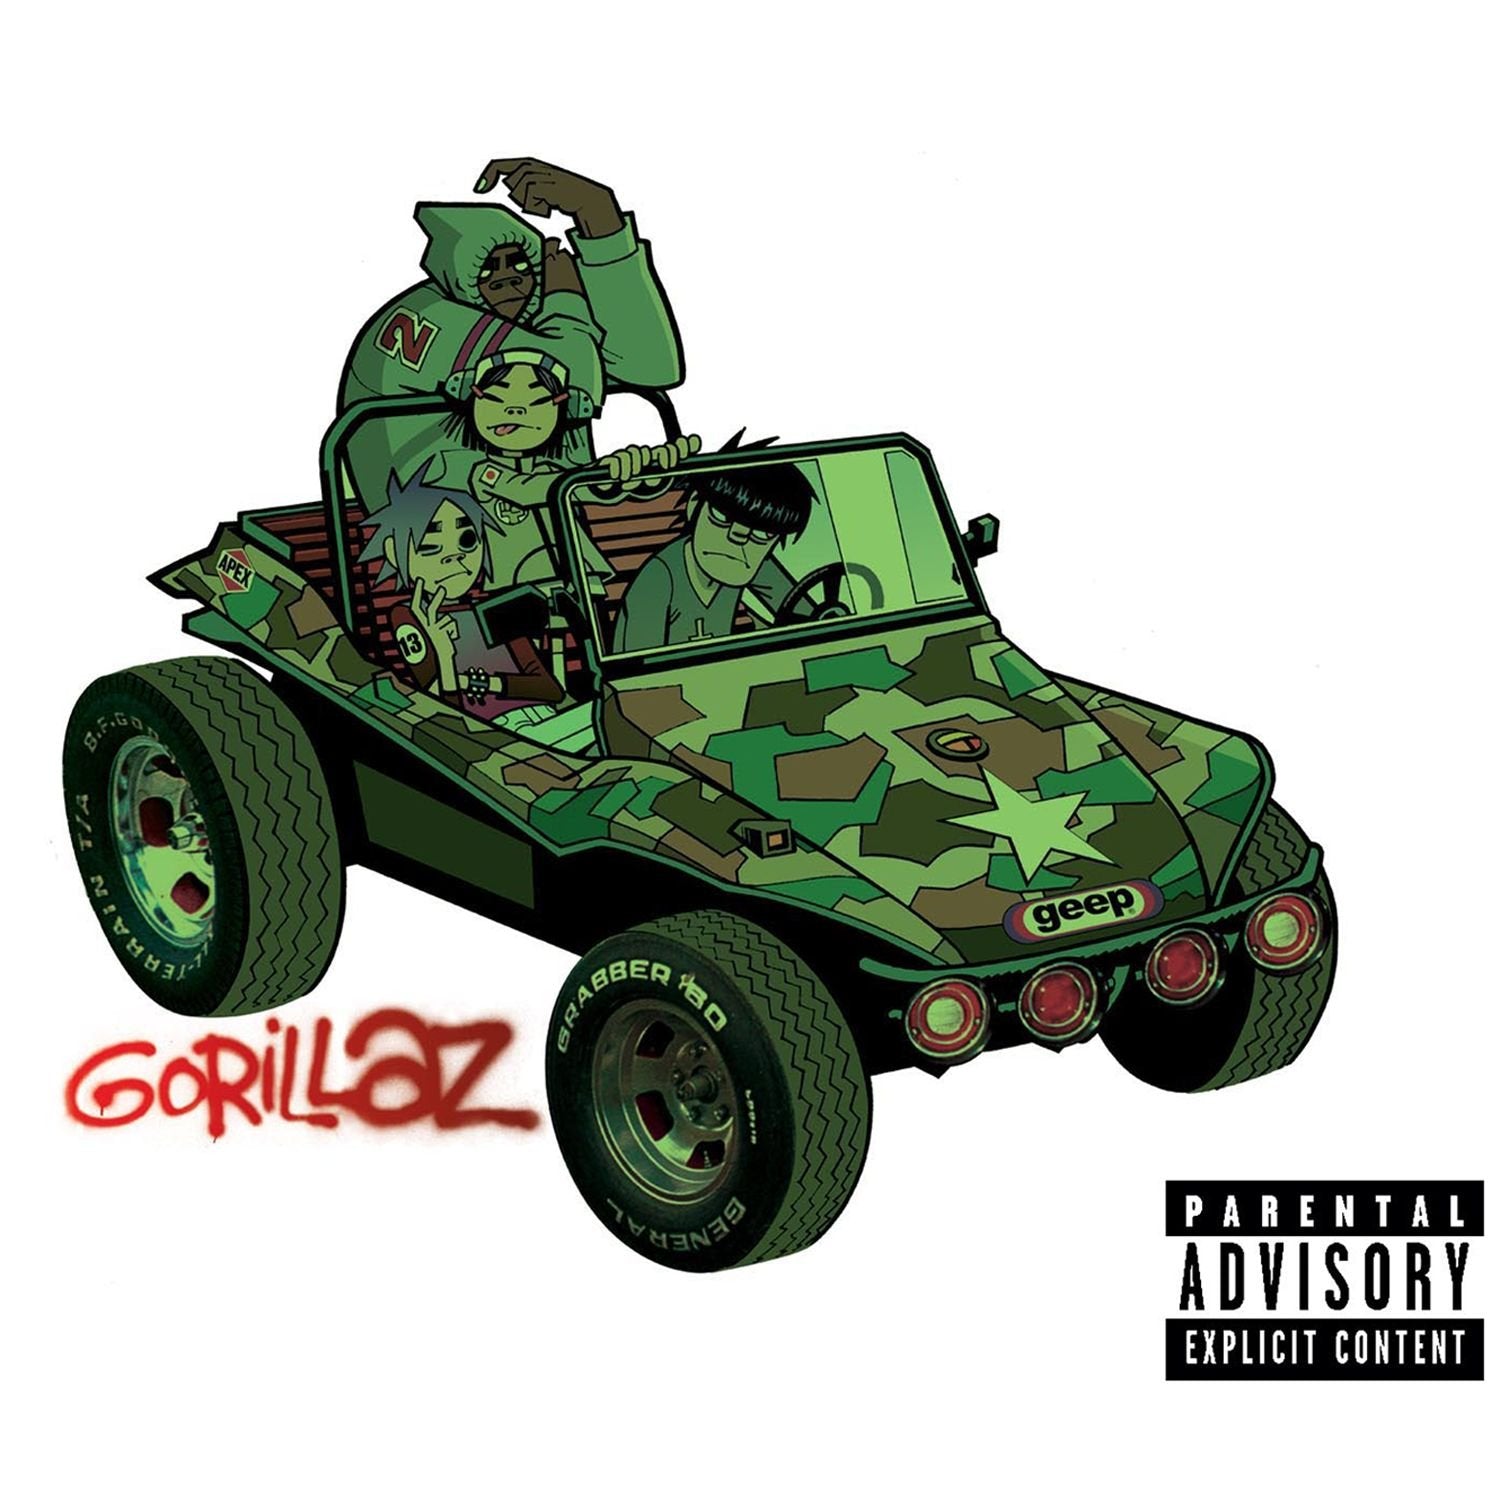 Gorrilaz - Gorillaz - neues Vinyl